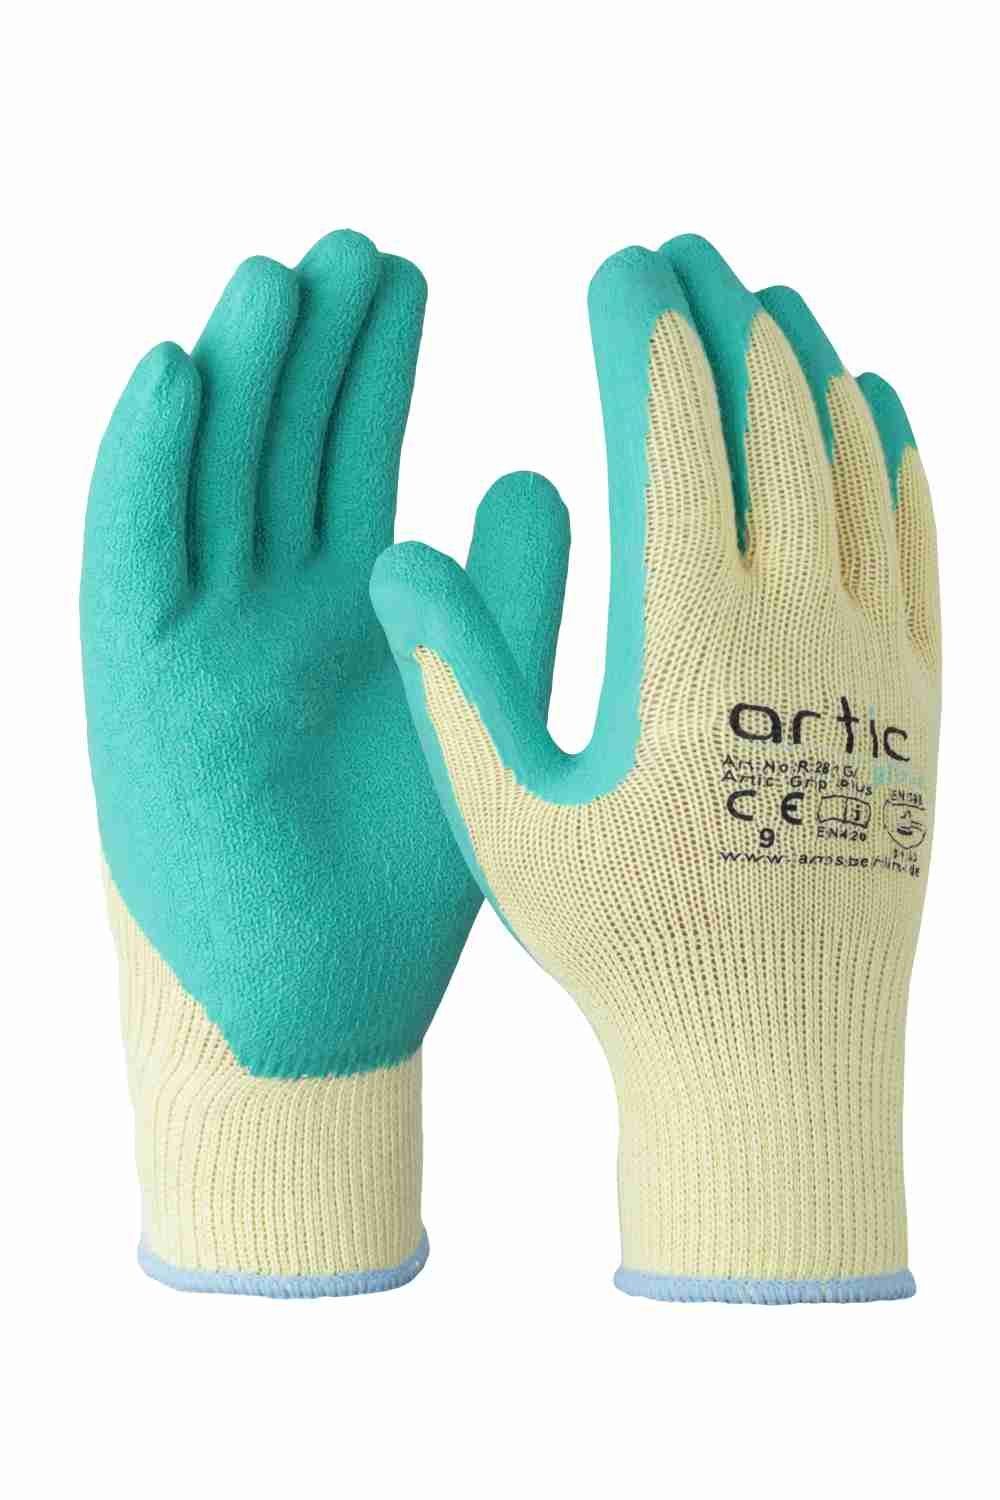 Handschuhe Artic Arbeitshandschuh-Set Plus 10 Größe Glove Grip ALLEGRA